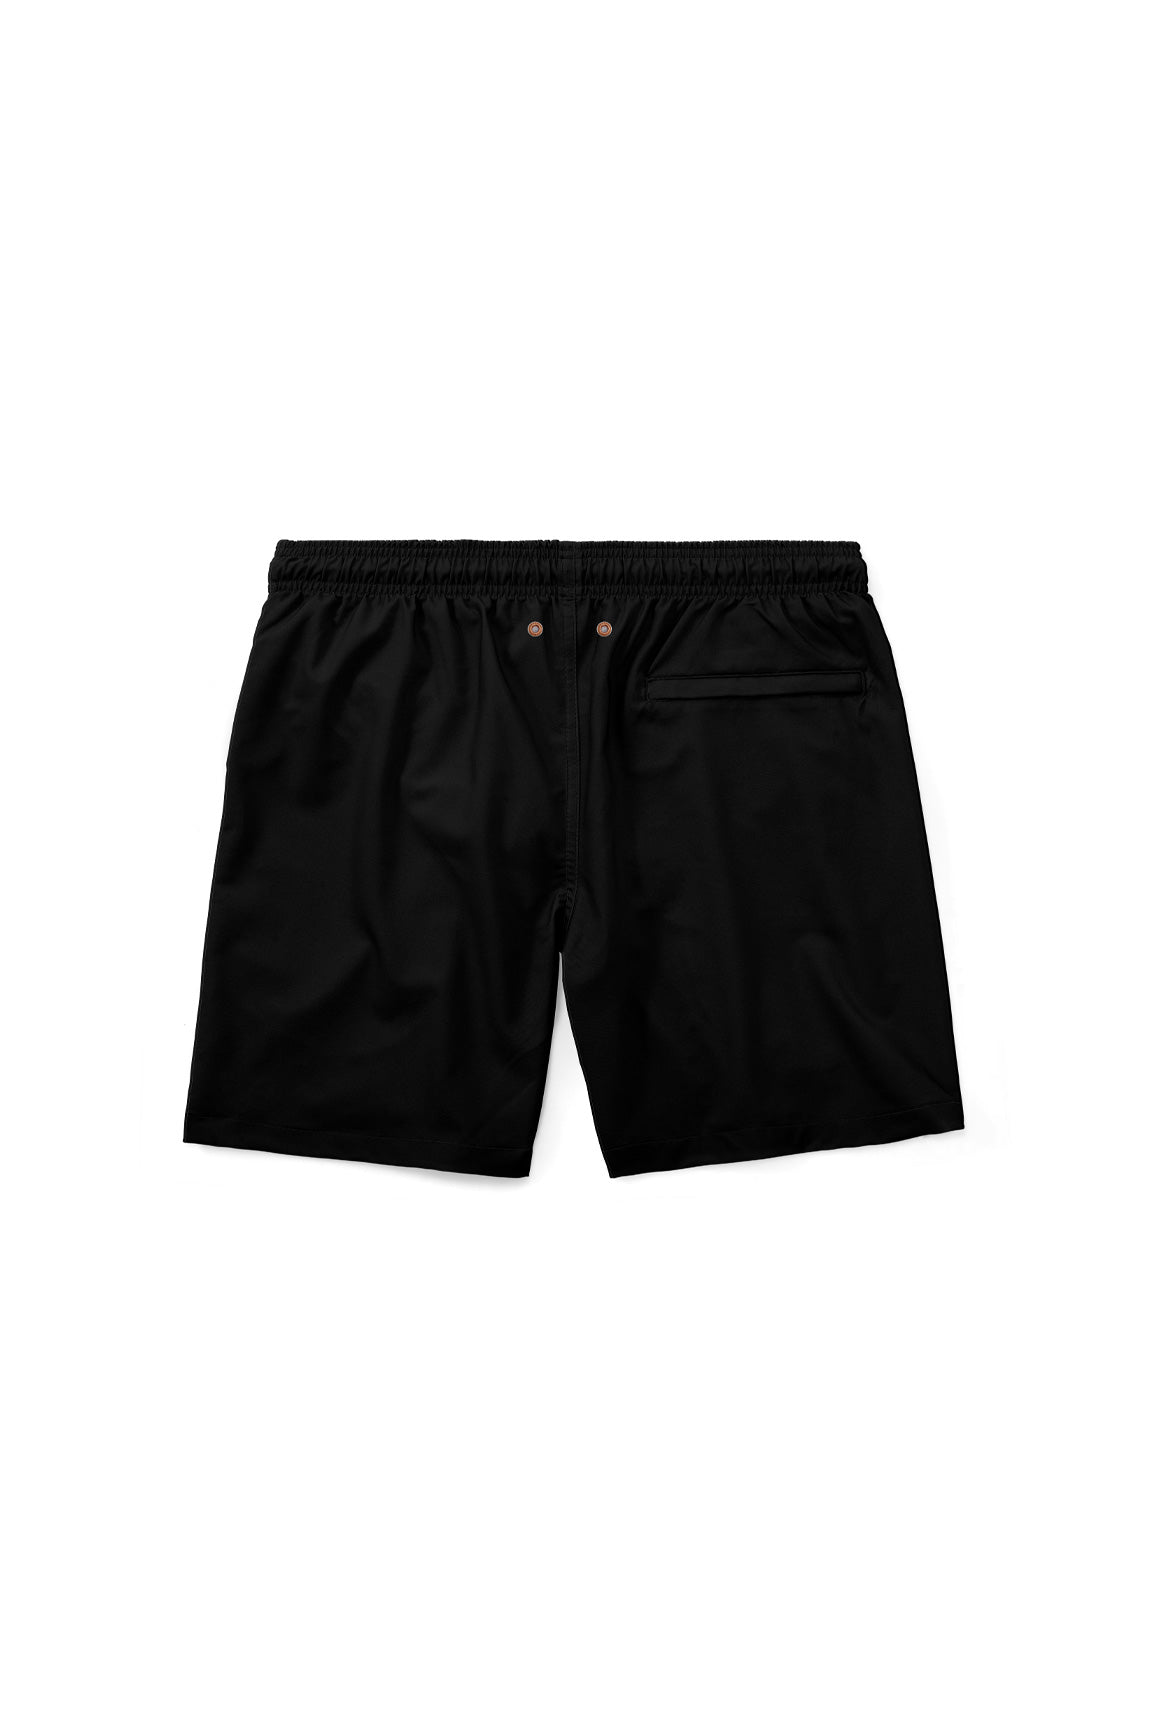 Pantaloneta The Deco Basic Black